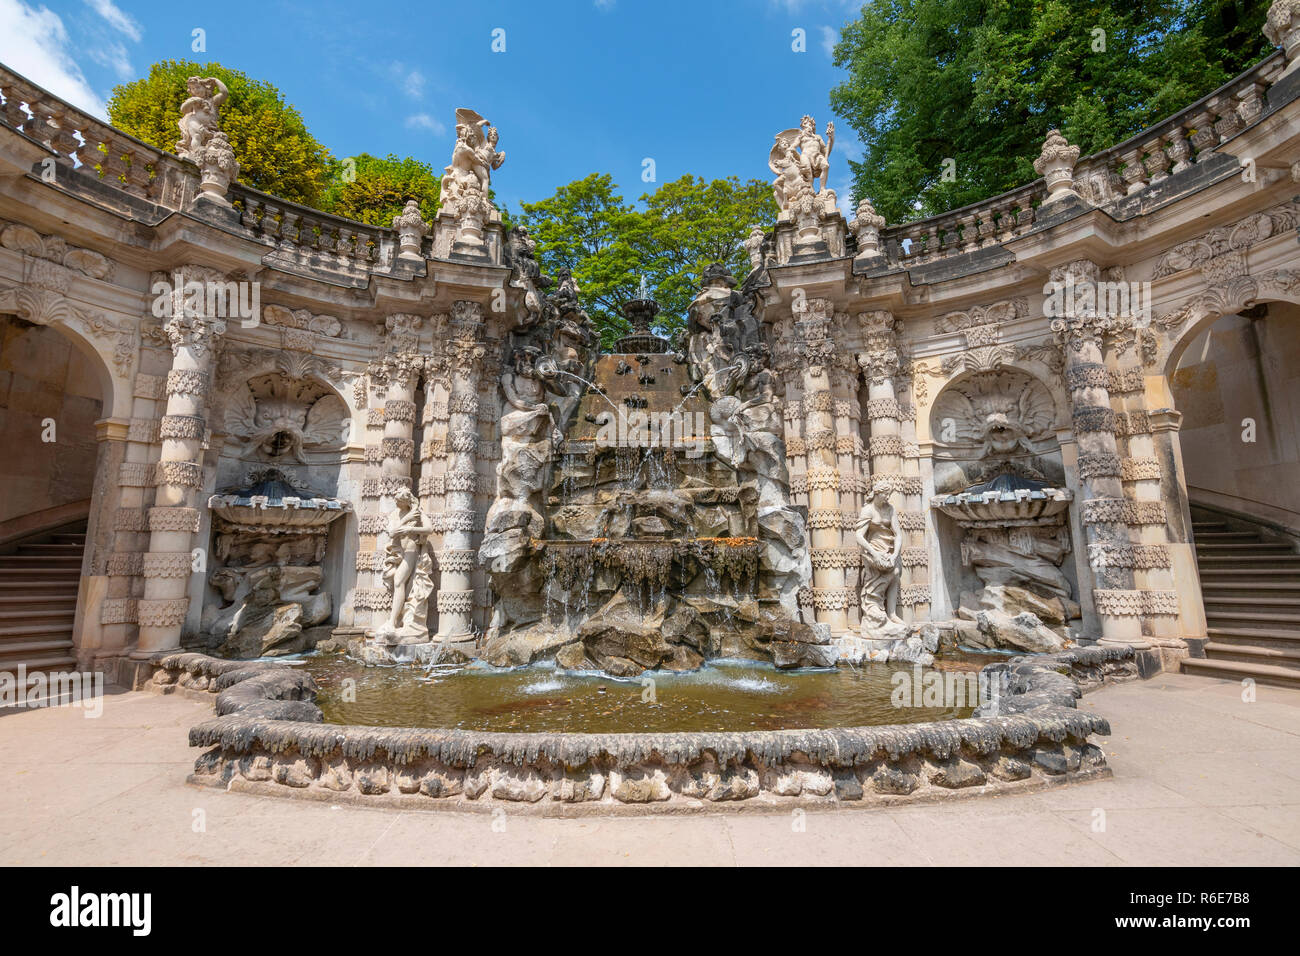 Fontaine ornementale baignoire (Nymphenbad les nymphes) dans le palais Zwinger à Dresde, Allemagne Banque D'Images